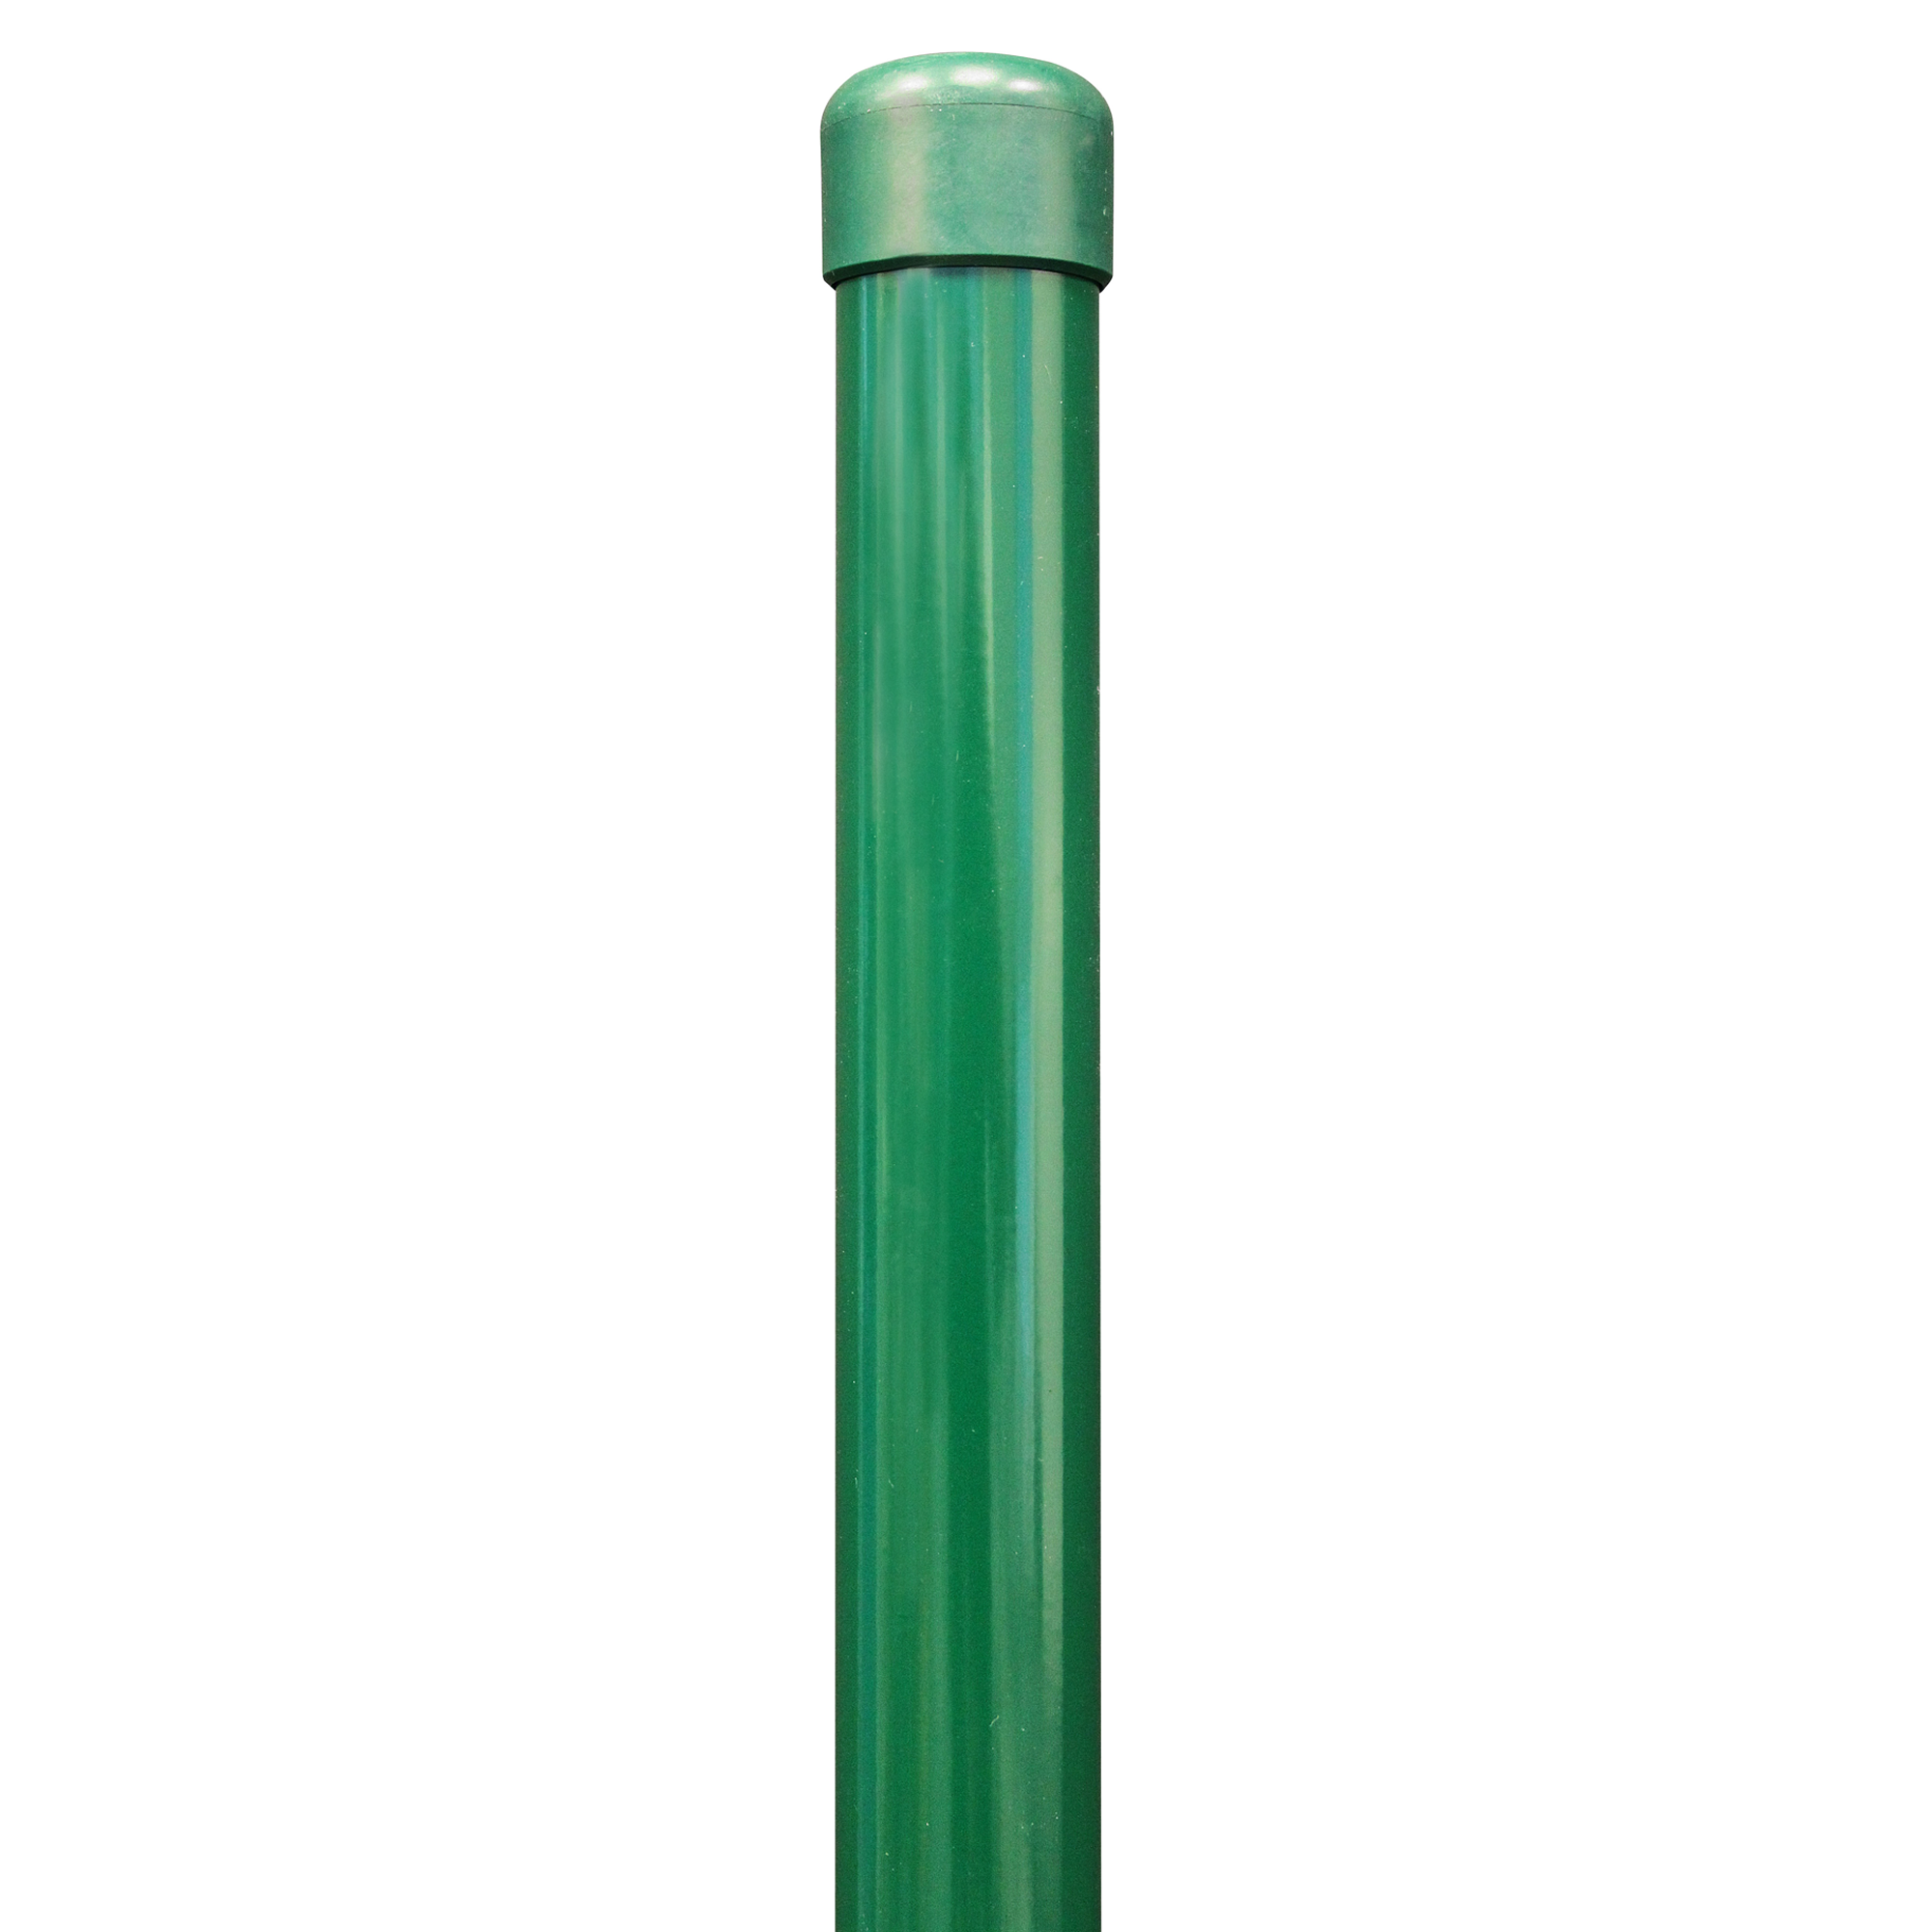 Zaunpfosten für Schweißgitterzäune grün Ø 3,4 x 122,5 cm + product picture